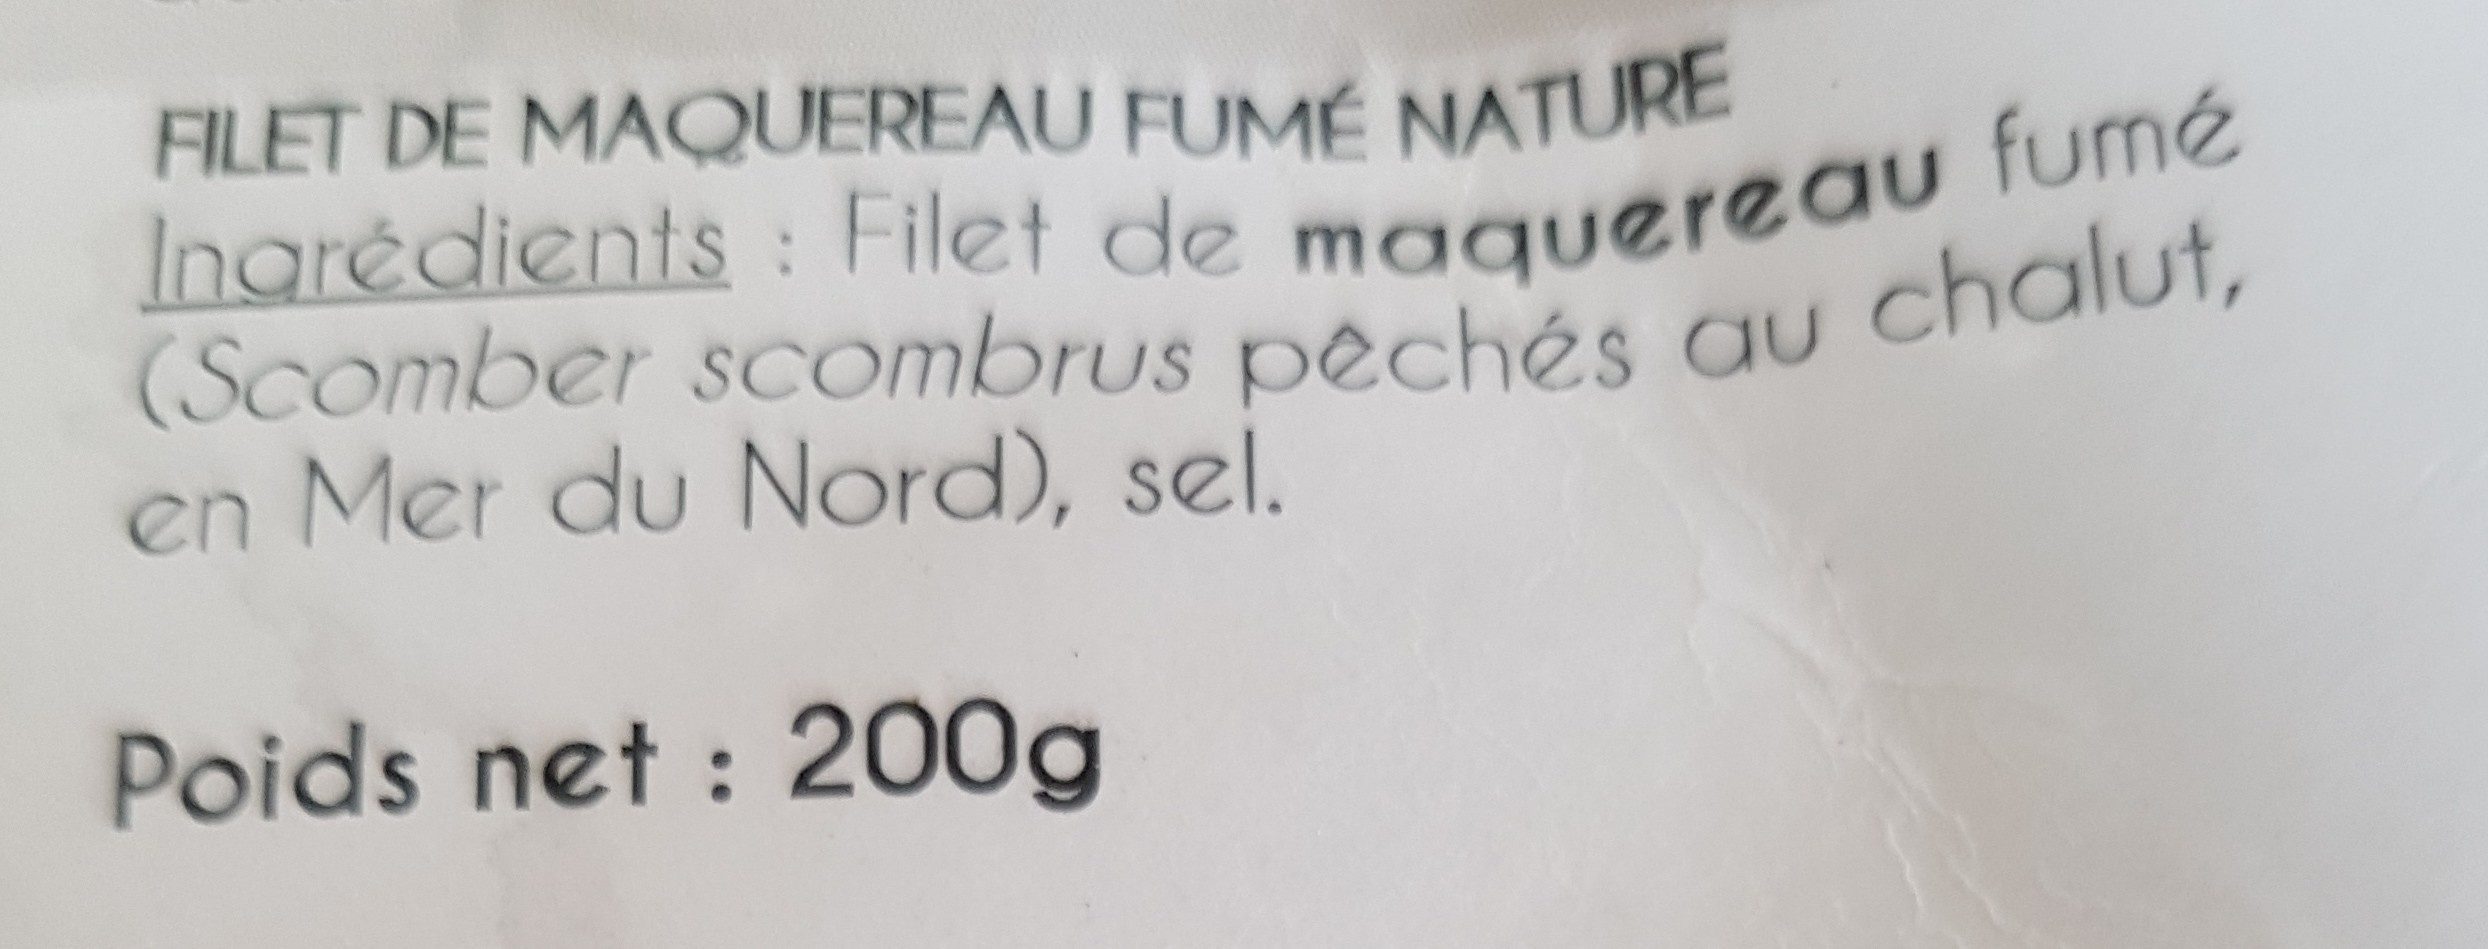 Filet de maquereau nature - Ingredients - fr